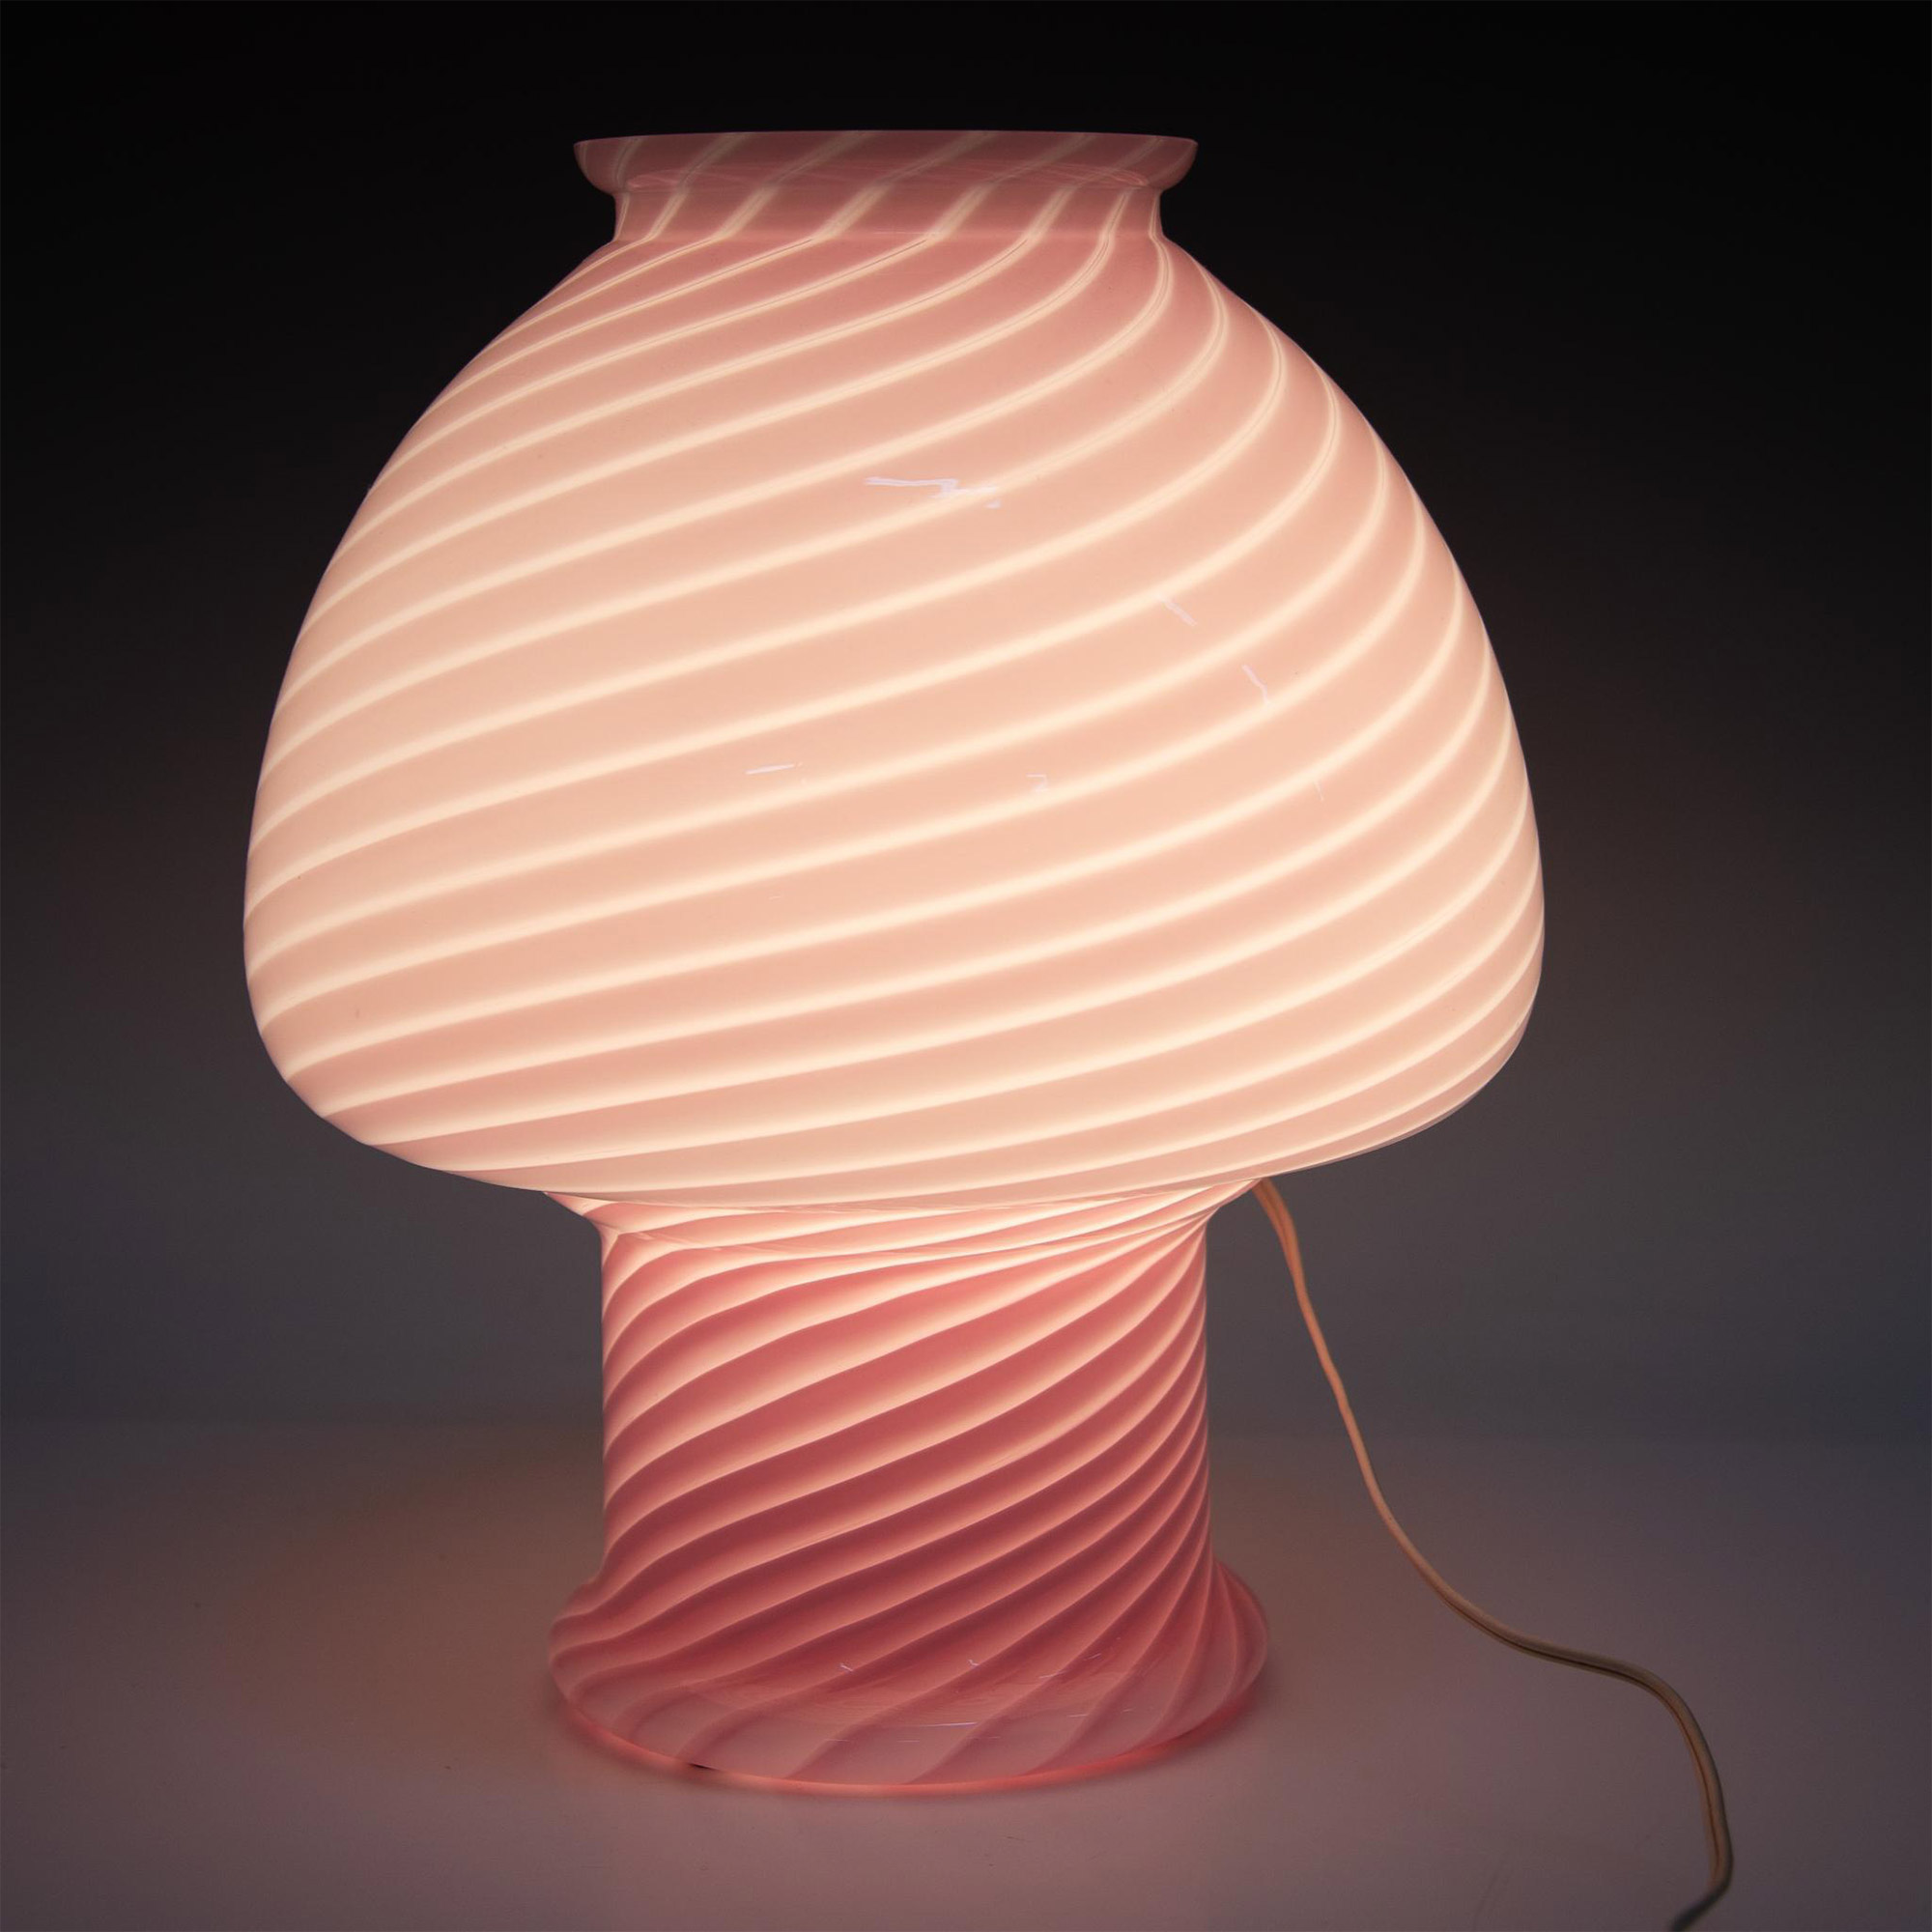 Vetri Murano Pink Glass Mushroom Lamp - Image 5 of 5